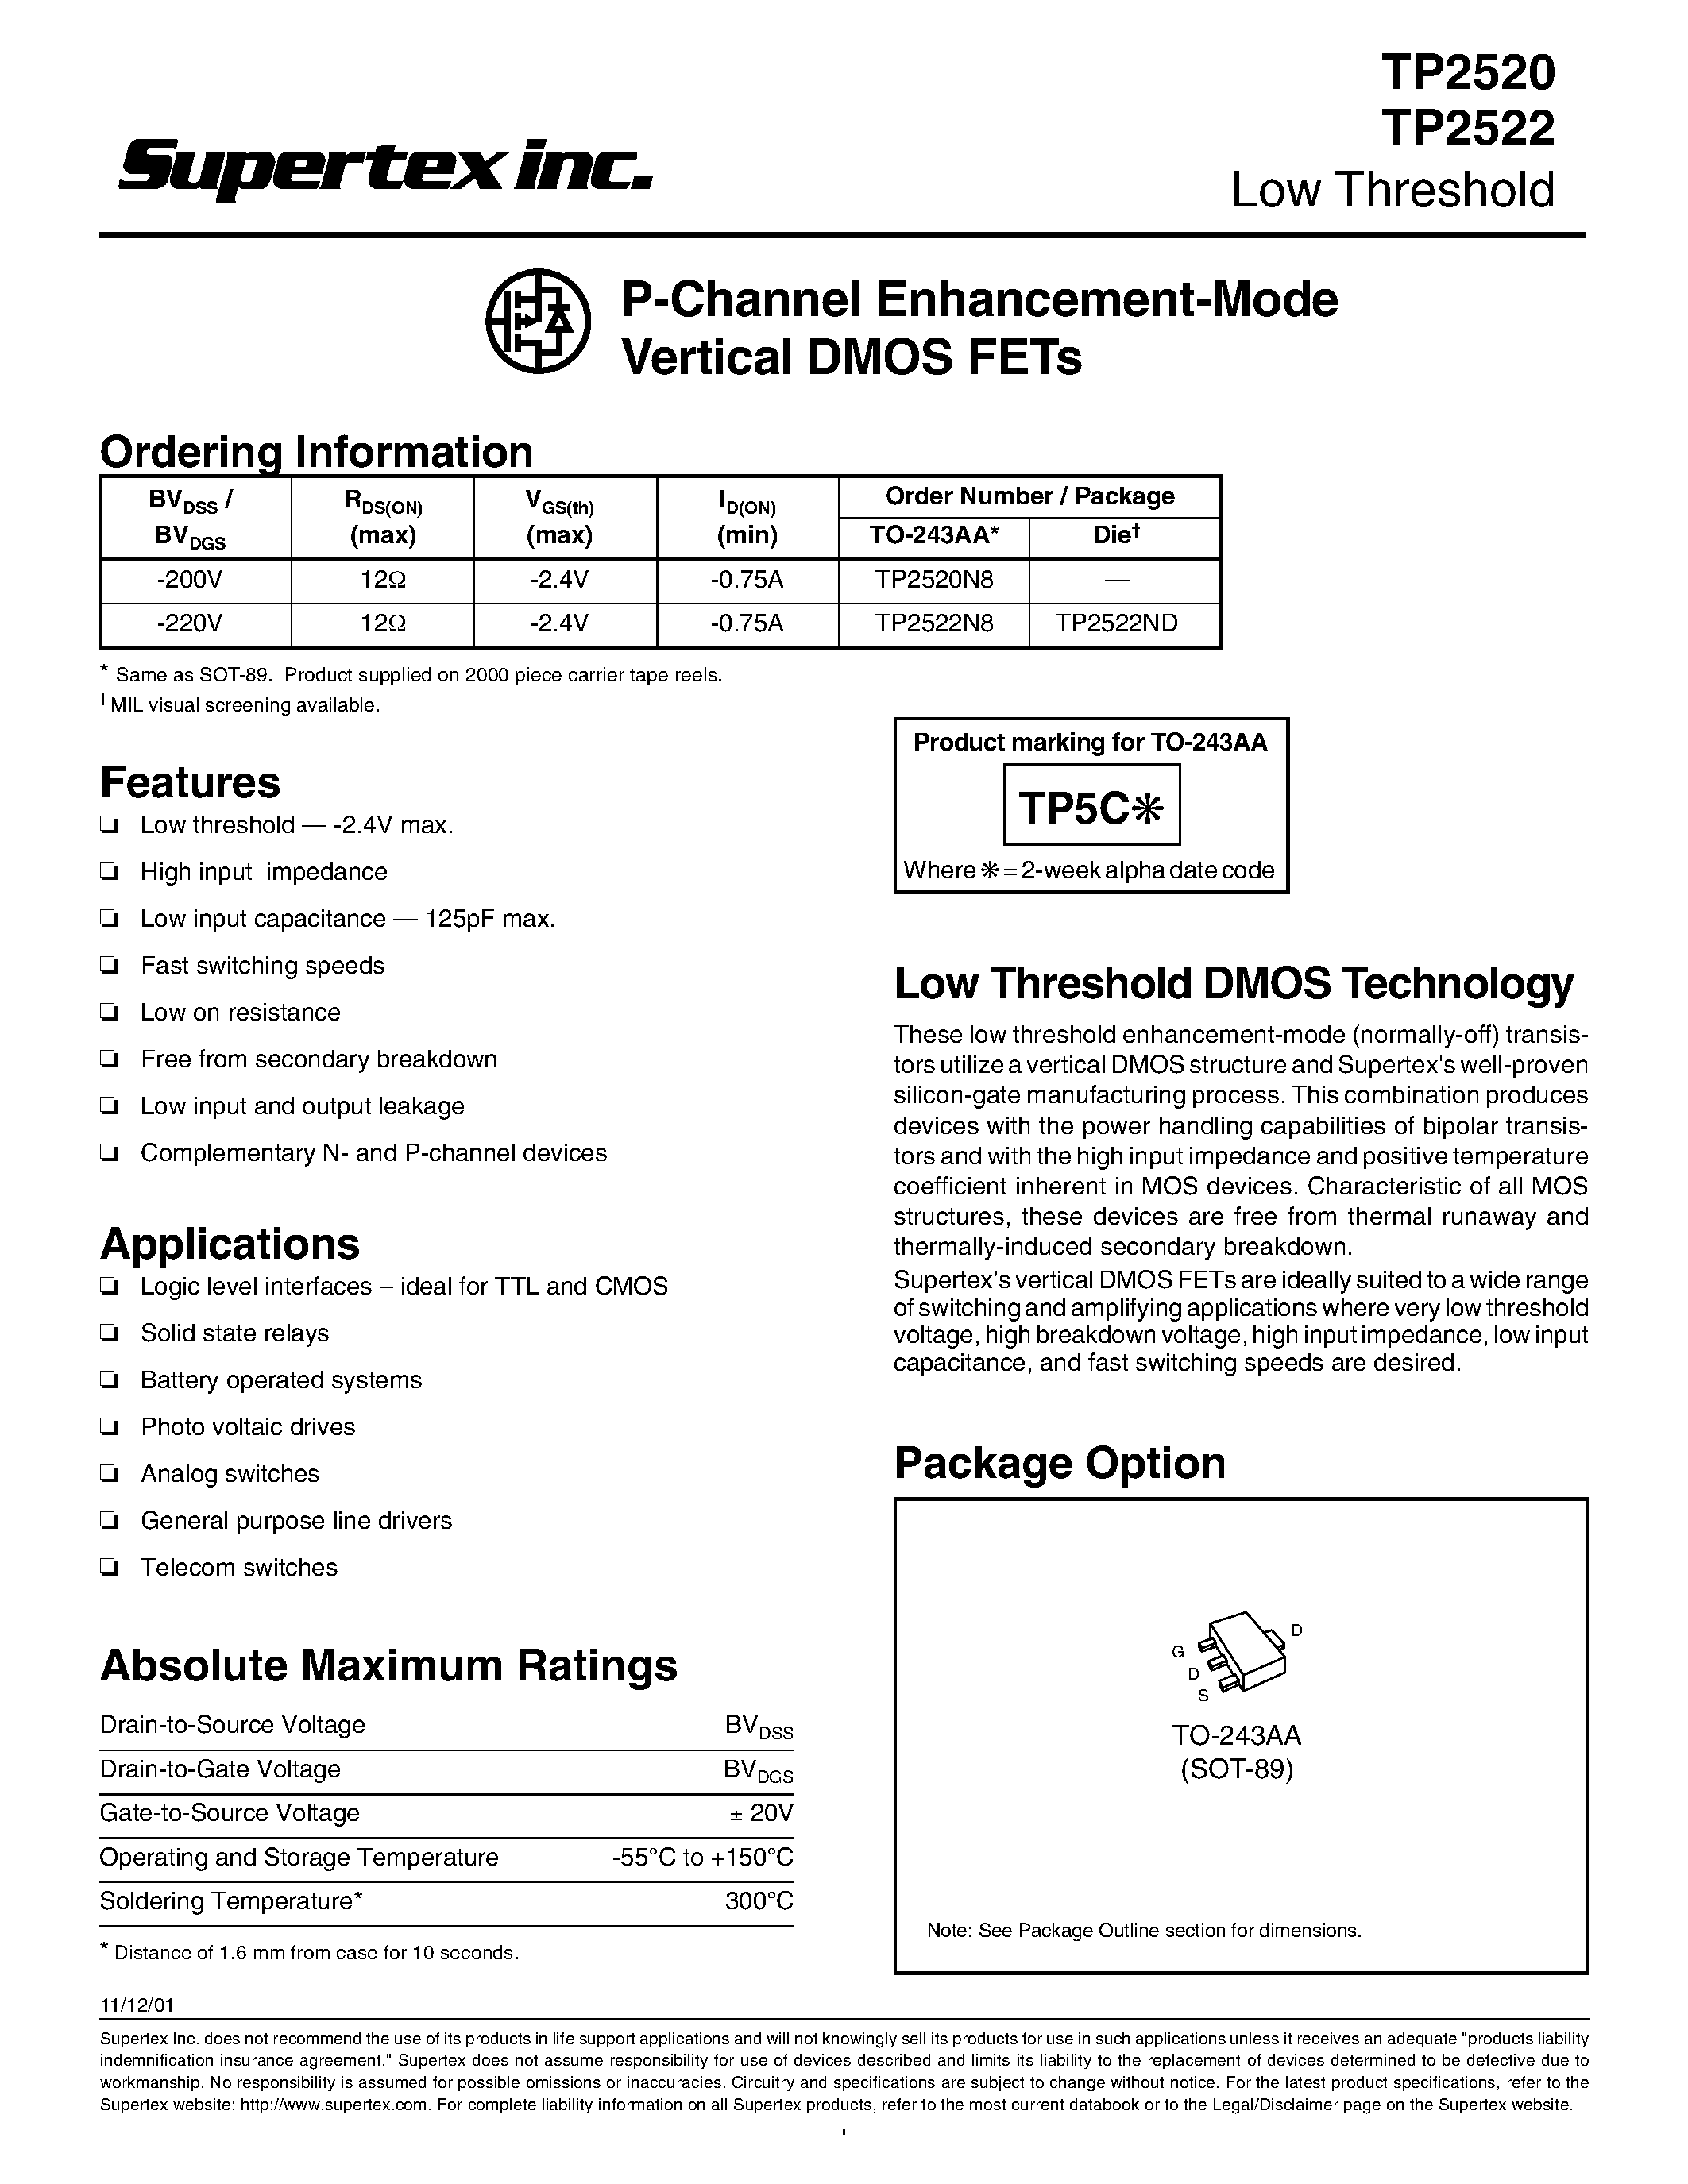 Datasheet TP2522 - P-Channel Enhancement-Mode Vertical DMOS FETs page 1